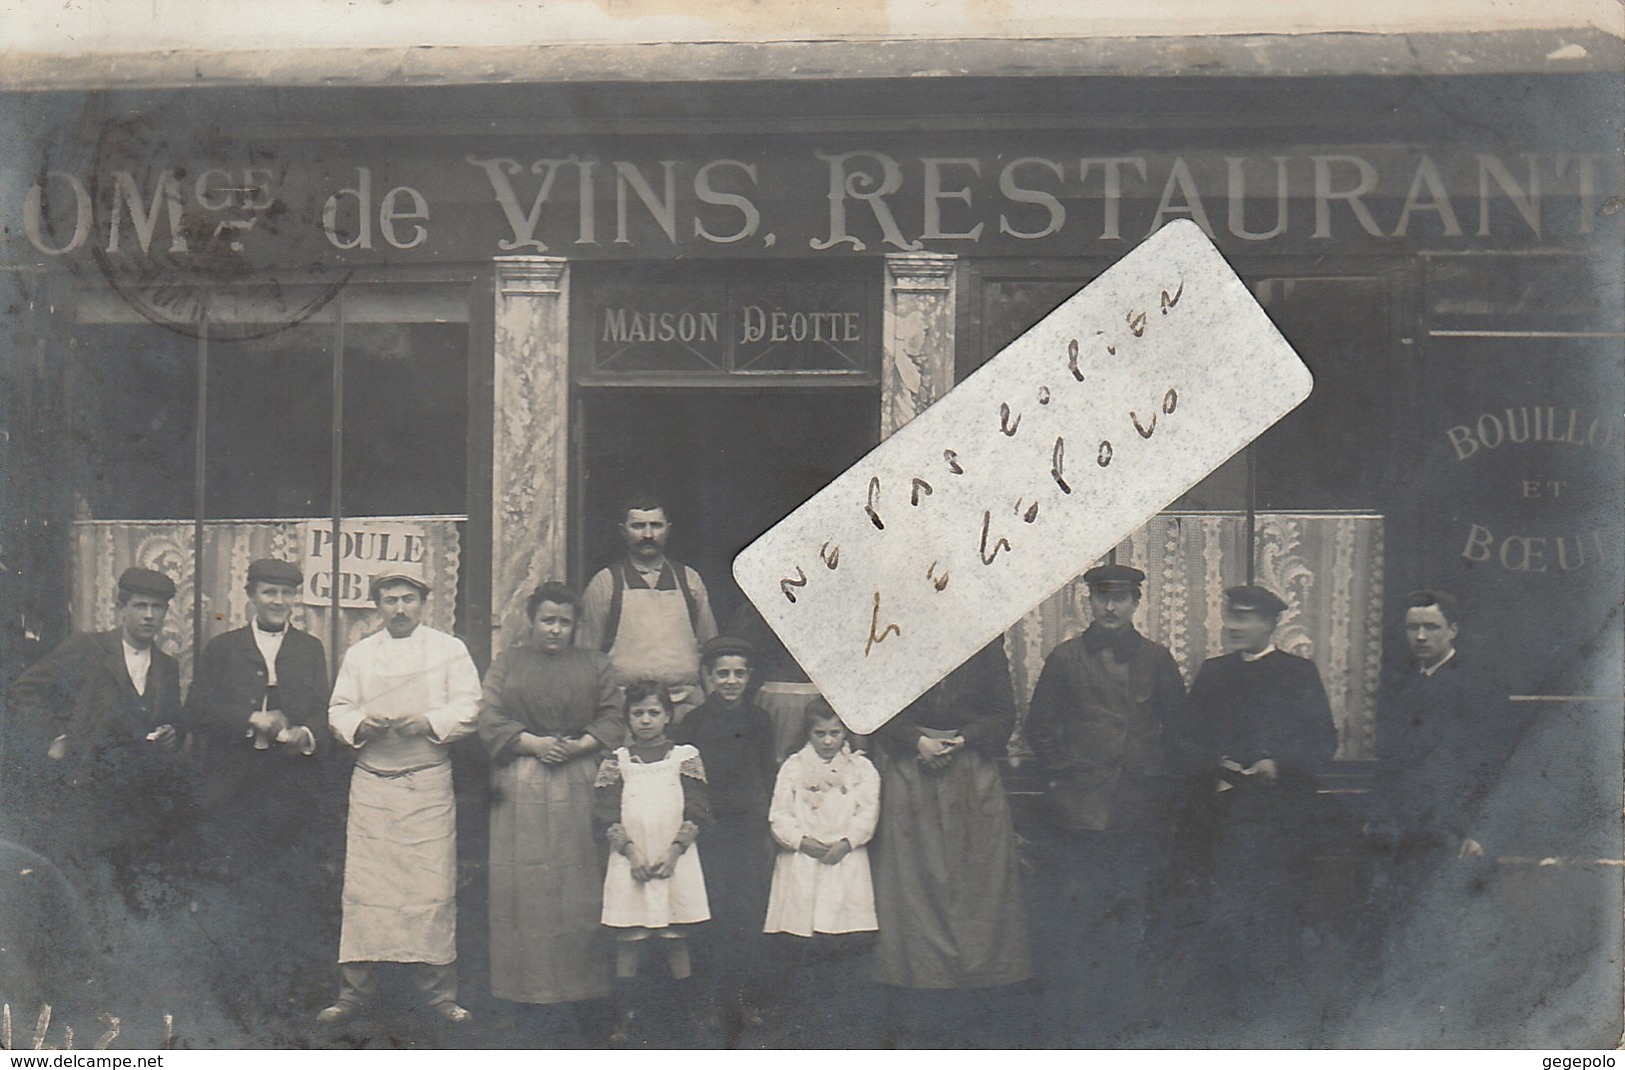 COURBEVOIE - Maison DEOTTE - Commerce De Vins , Restaurant     ( Carte Photo ) - Courbevoie